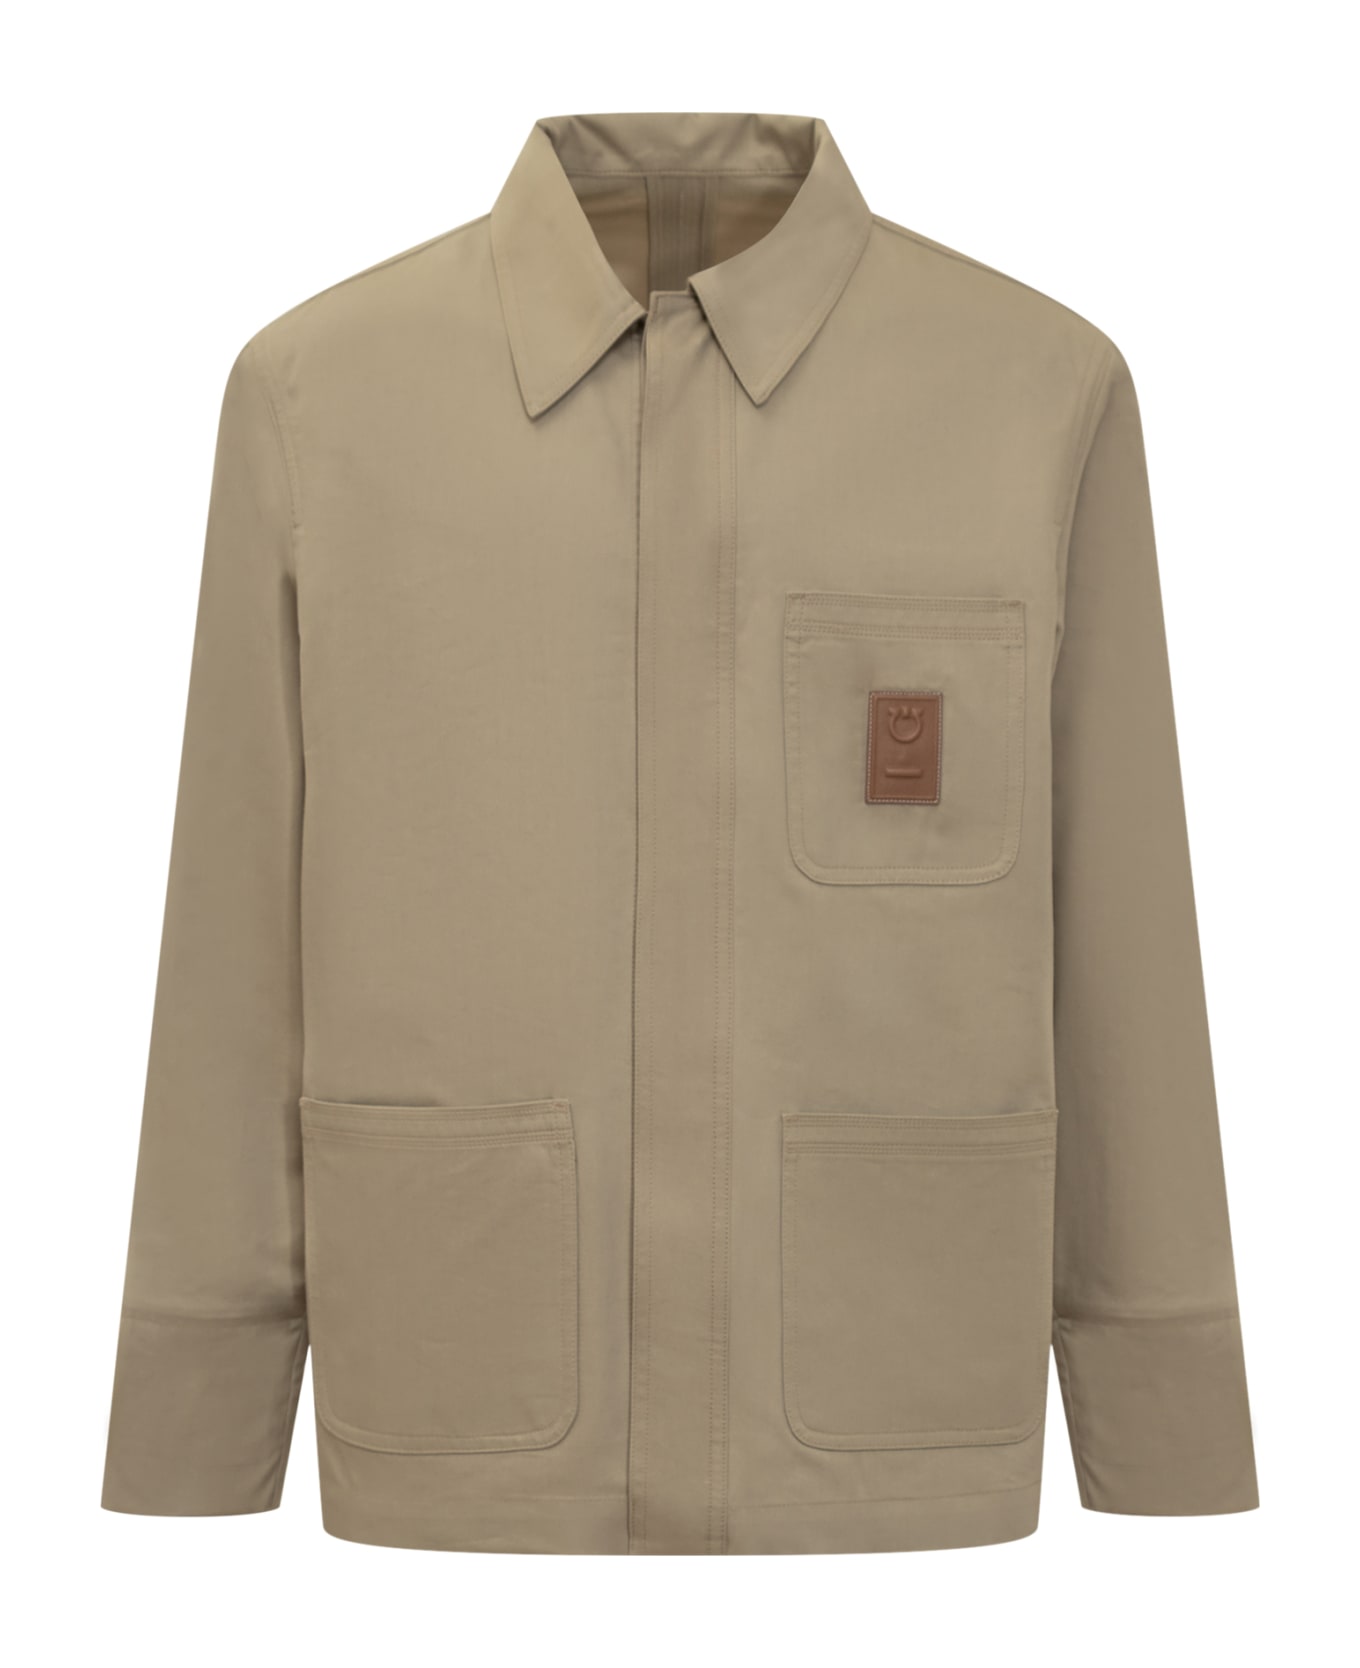 Ferragamo Jacket With Logo - SAND ジャケット